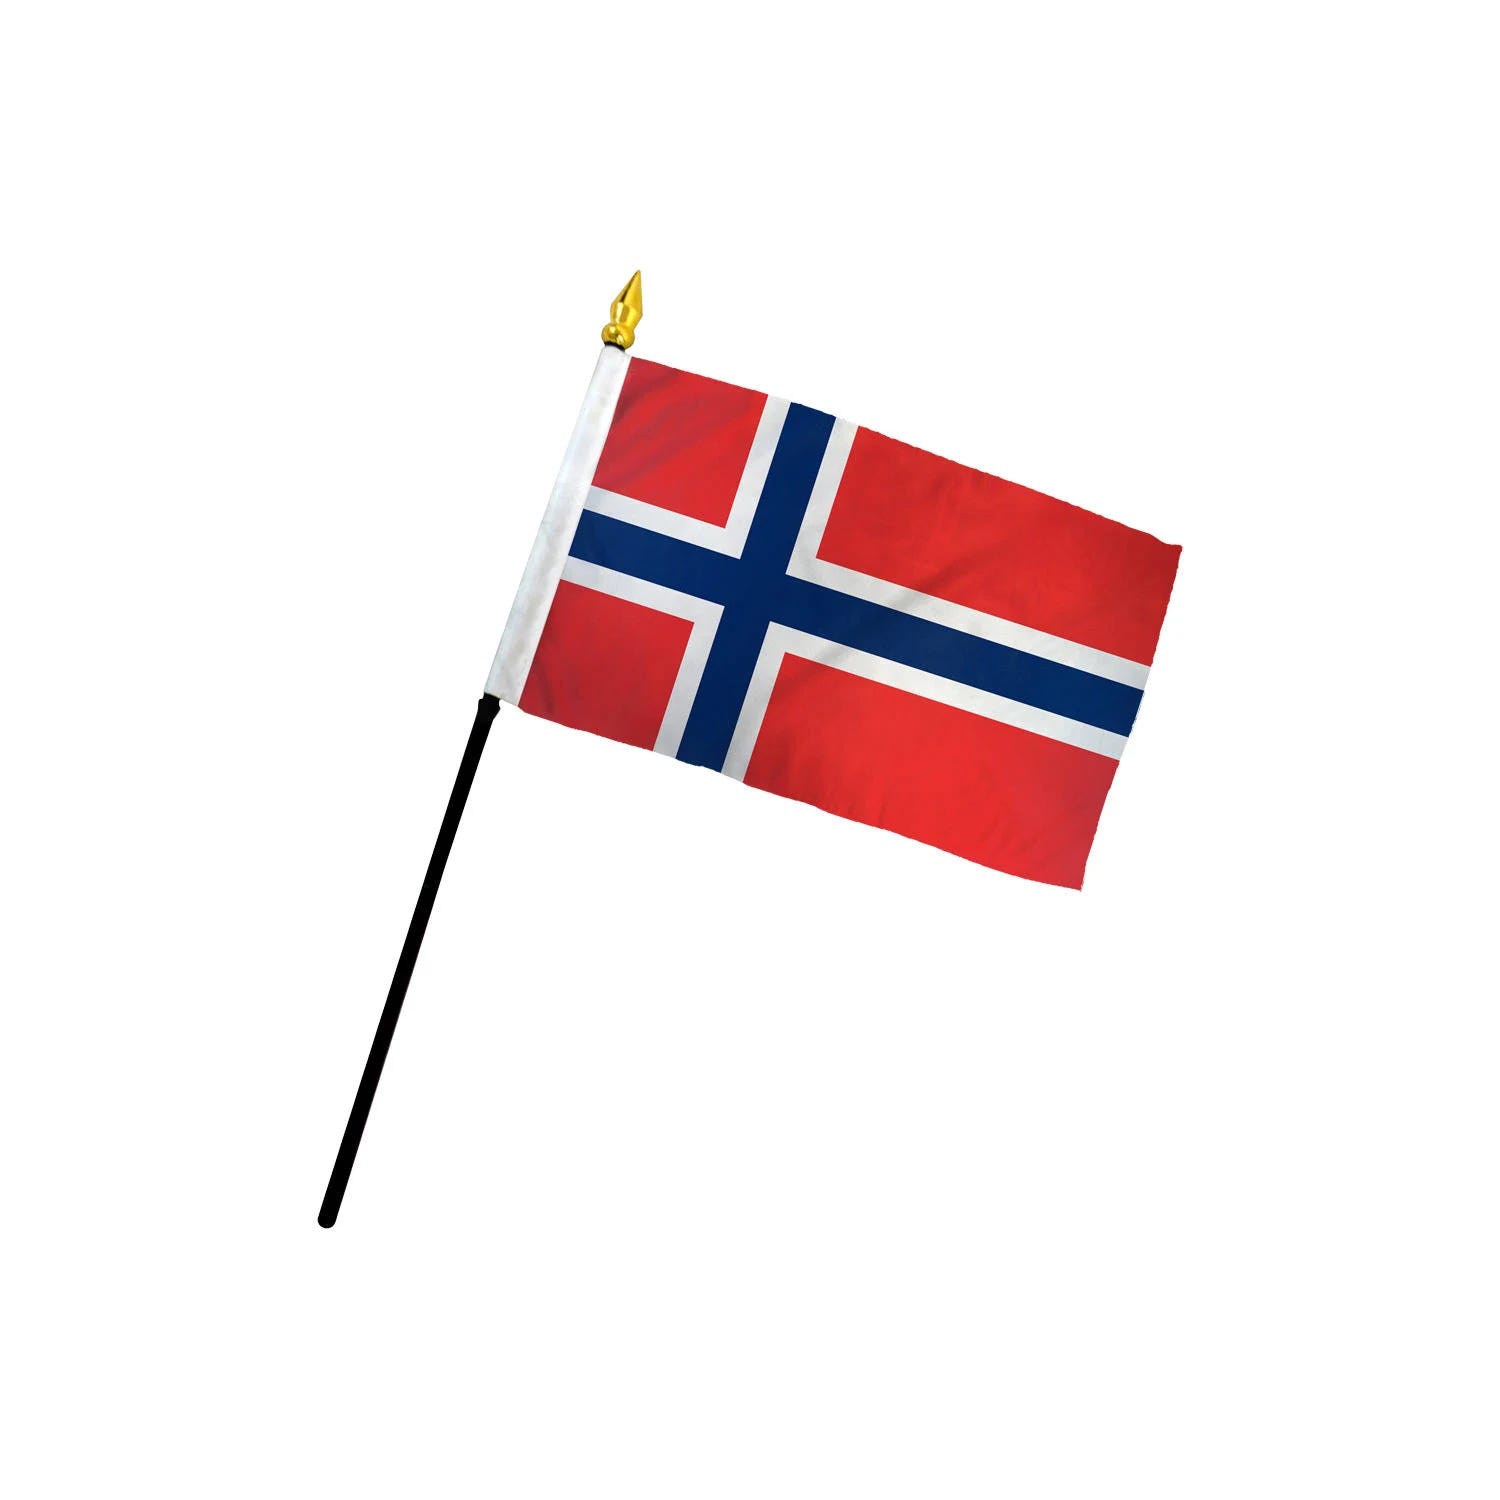 Affordable and Stylish Norwegian Flag | Image